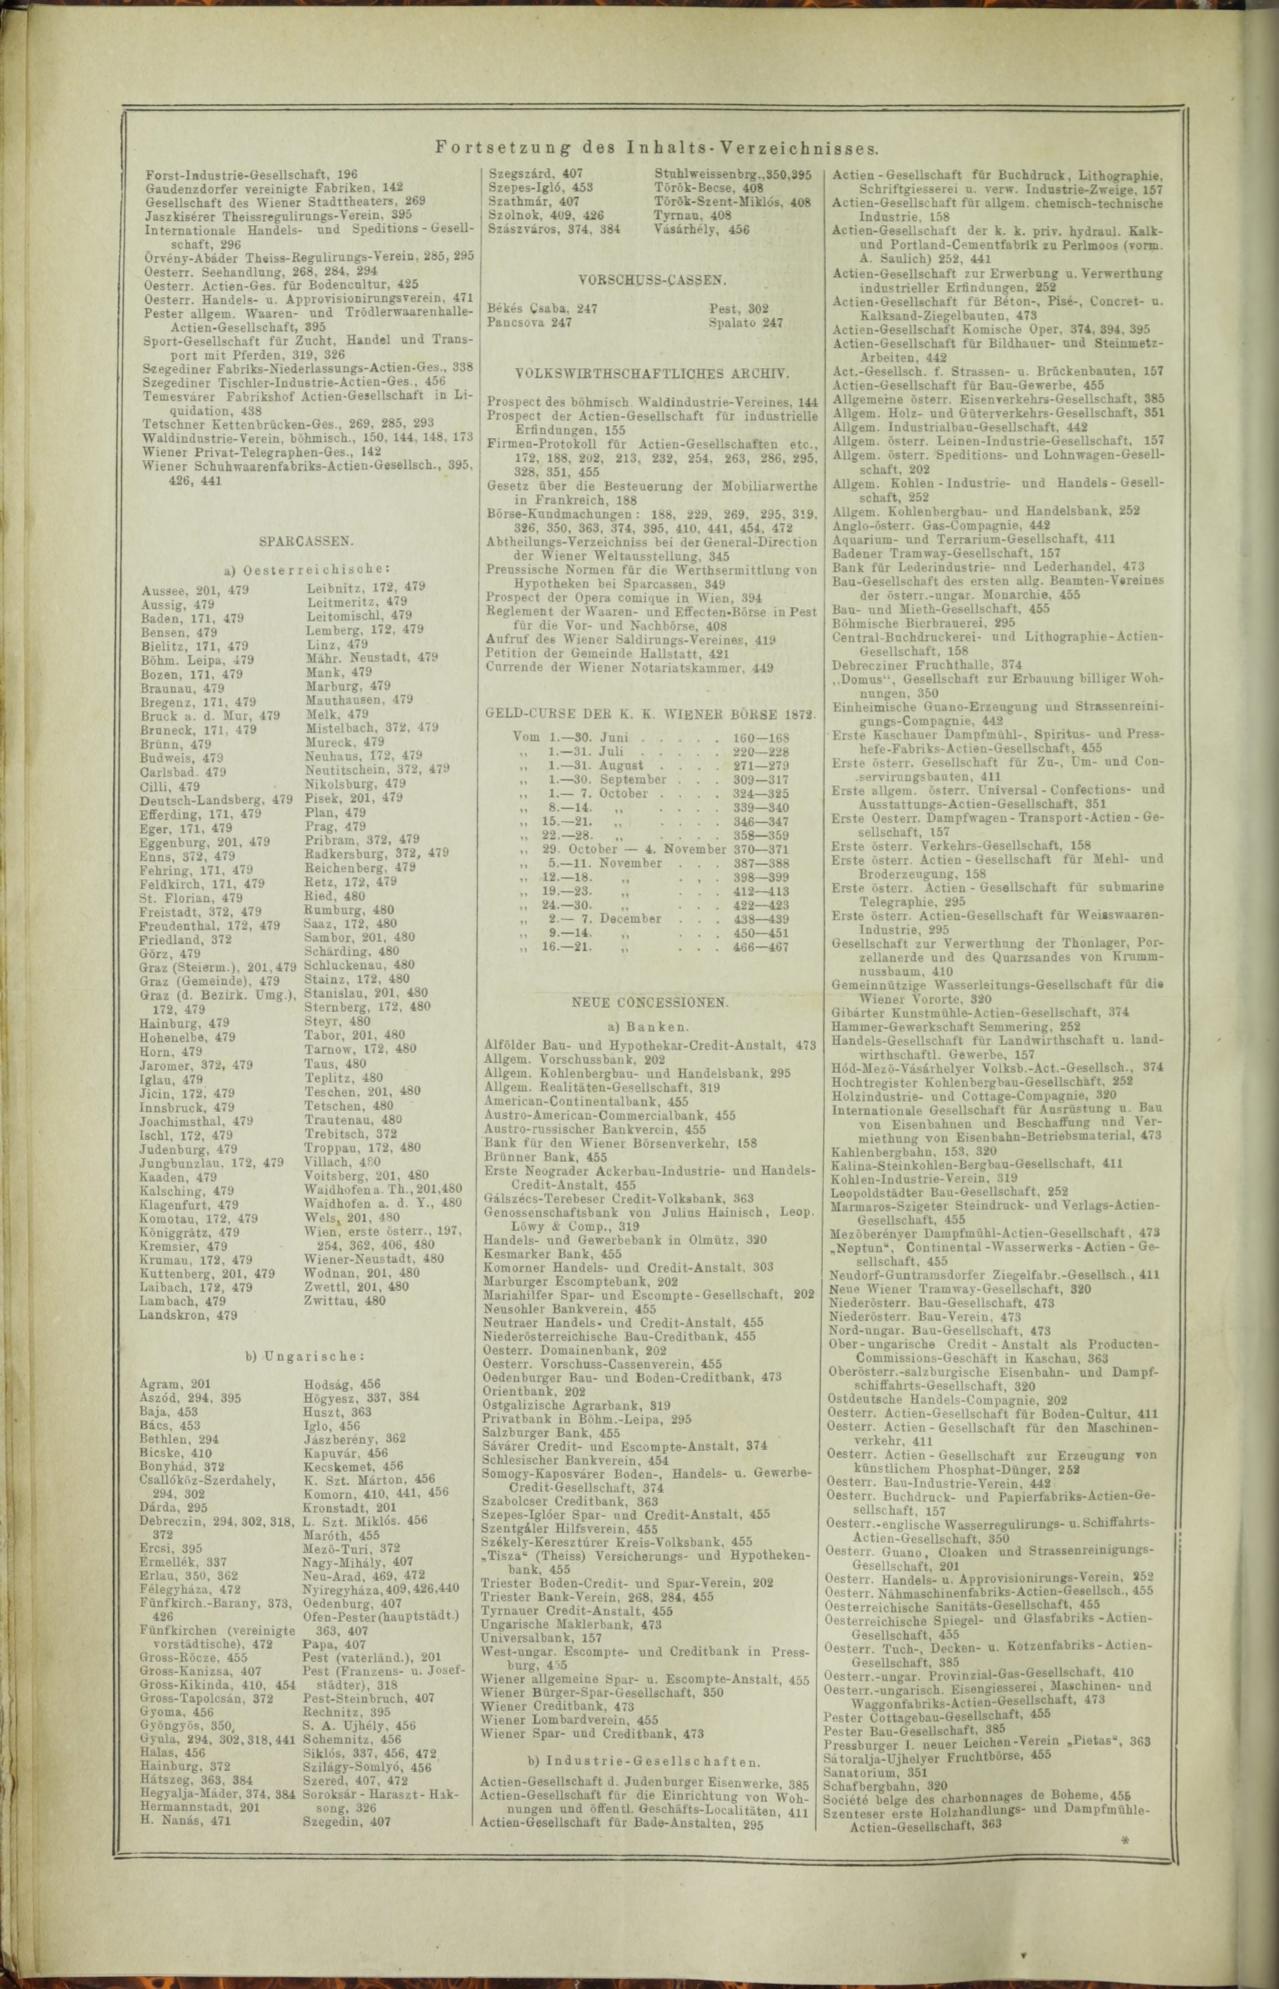 Der Tresor 07.08.1872 - Page 25